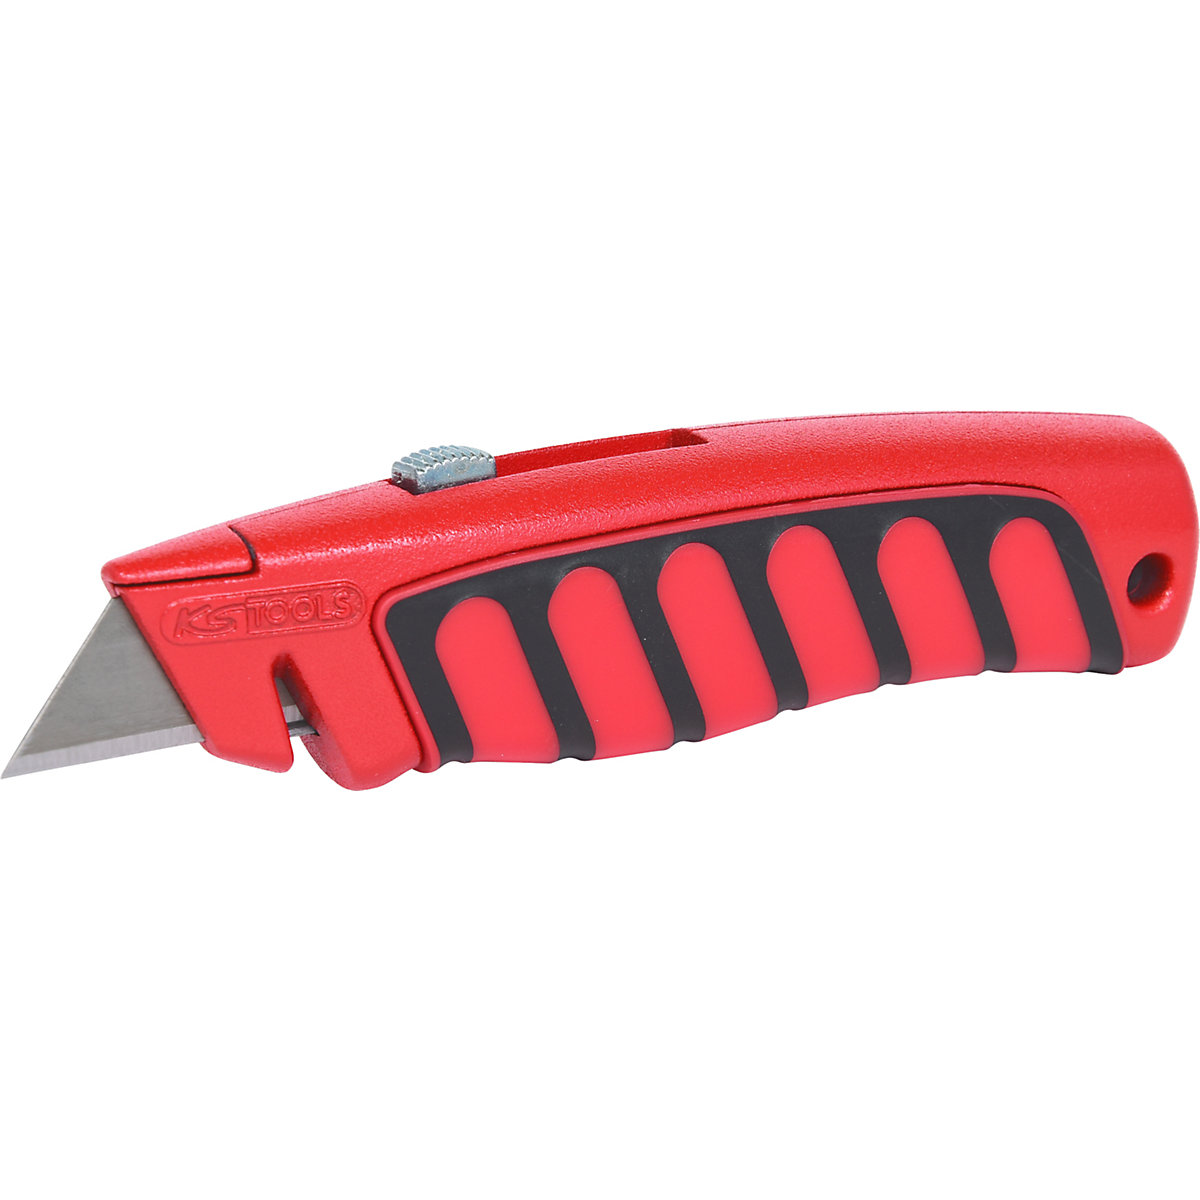 Profesionalni univerzalni nož – KS Tools